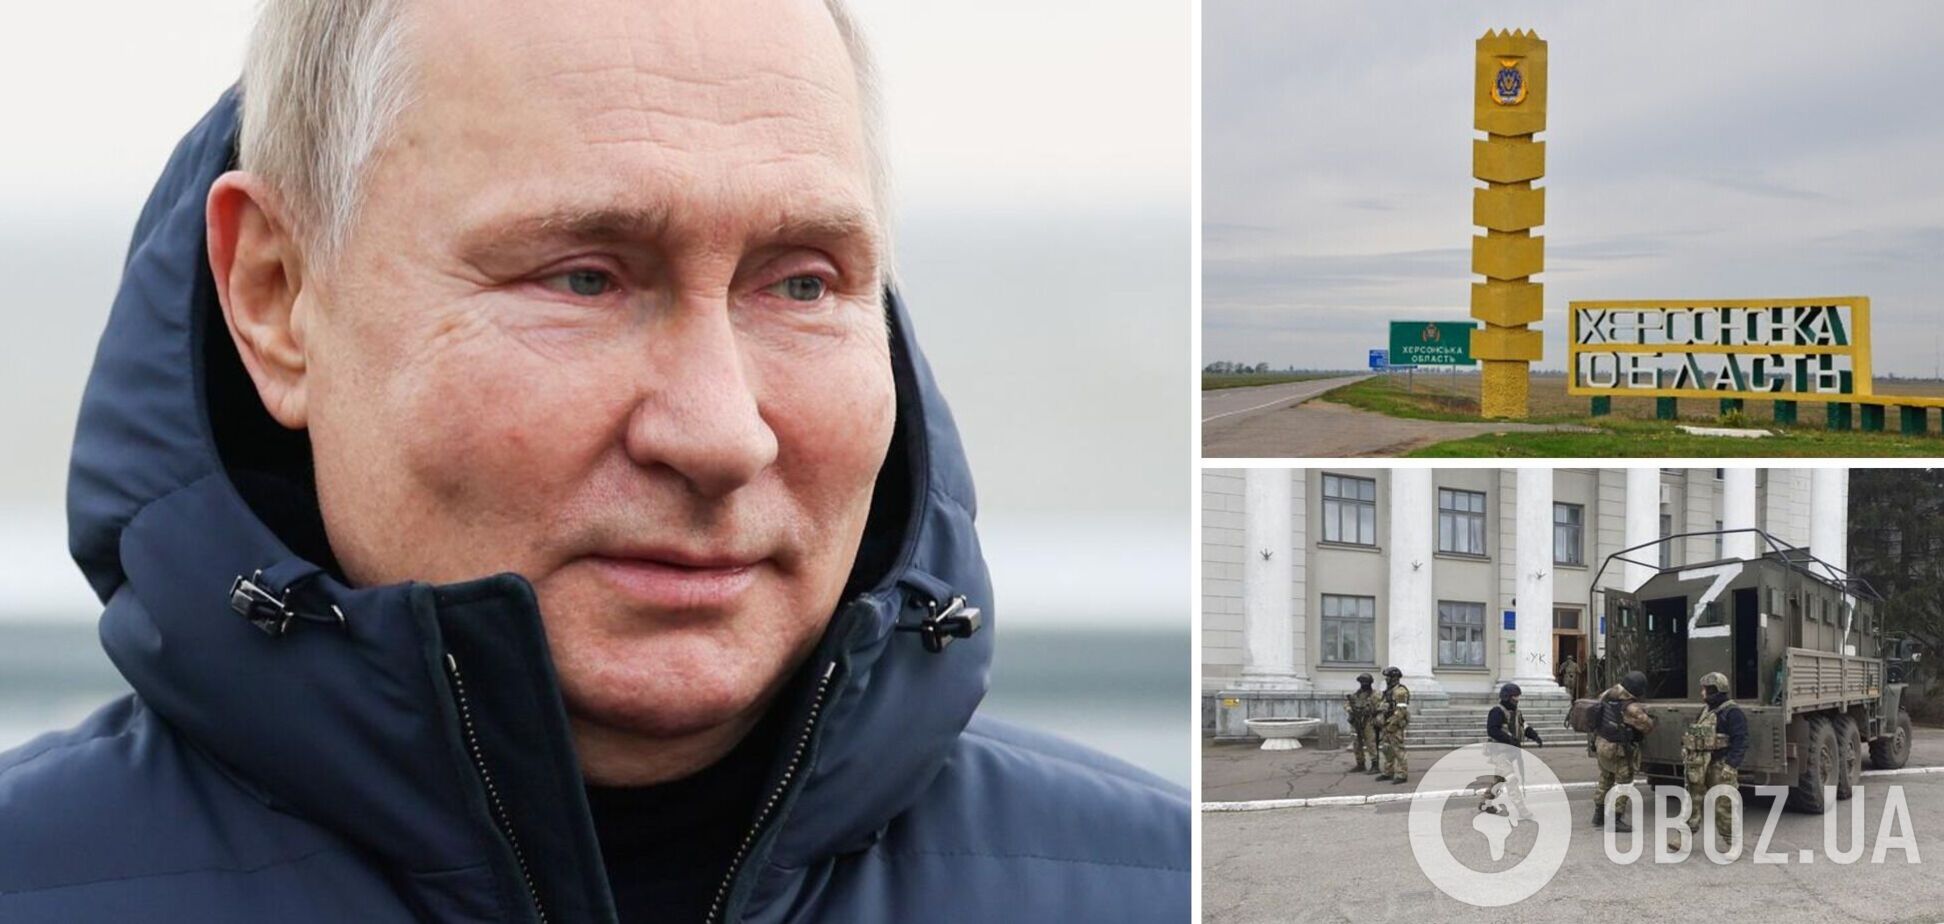 'А штаб где?' Россияне не поверили в визит Путина в Херсонскую область: требуют доказательств